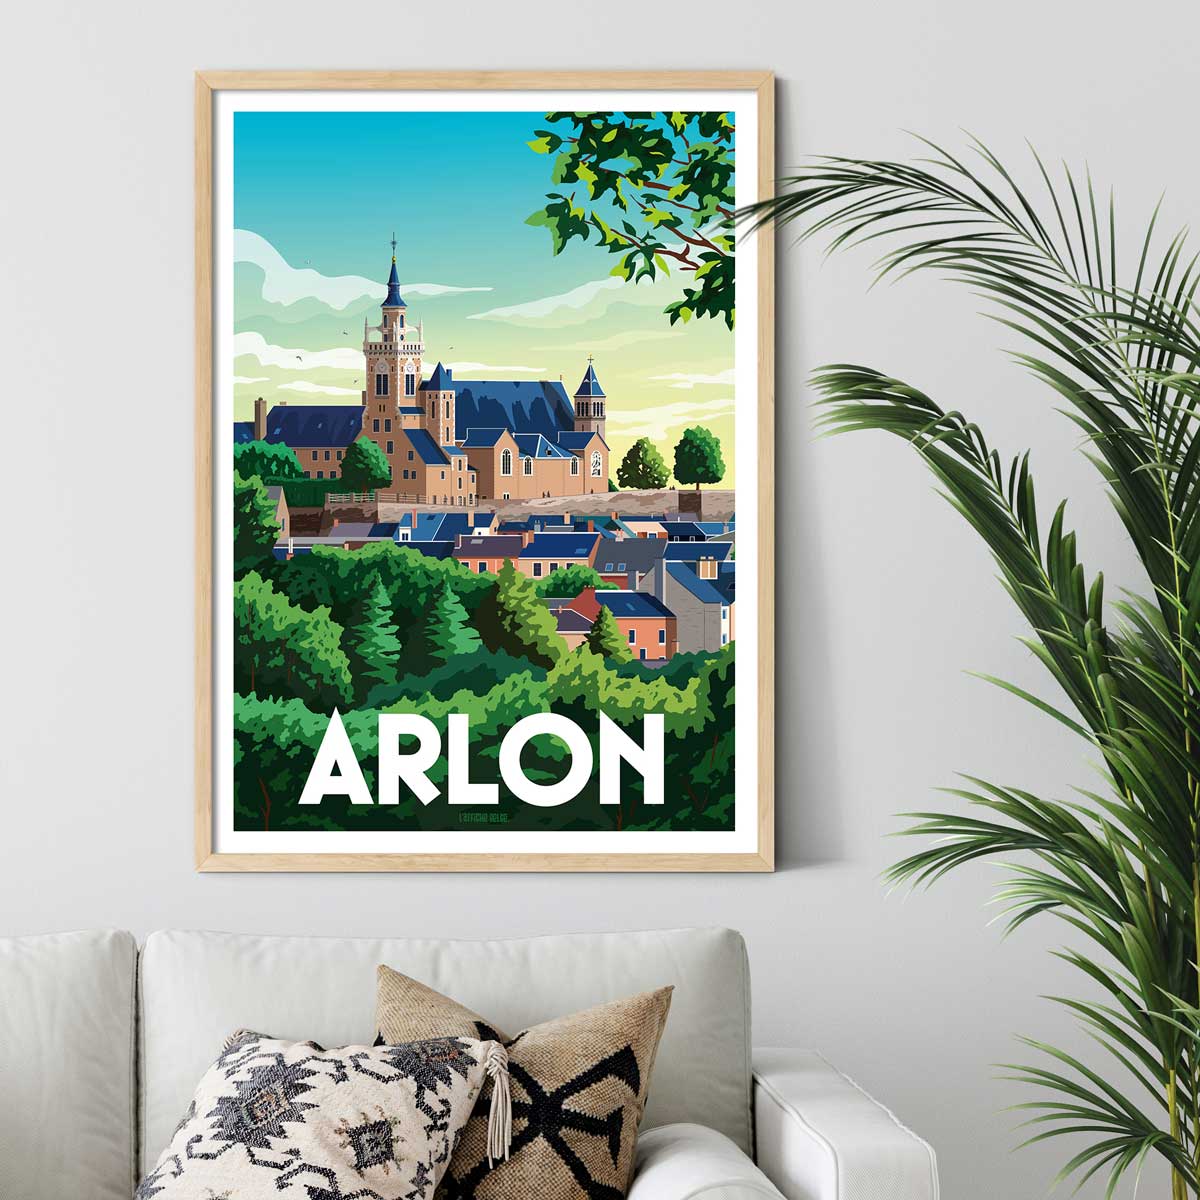 Arlon" poster